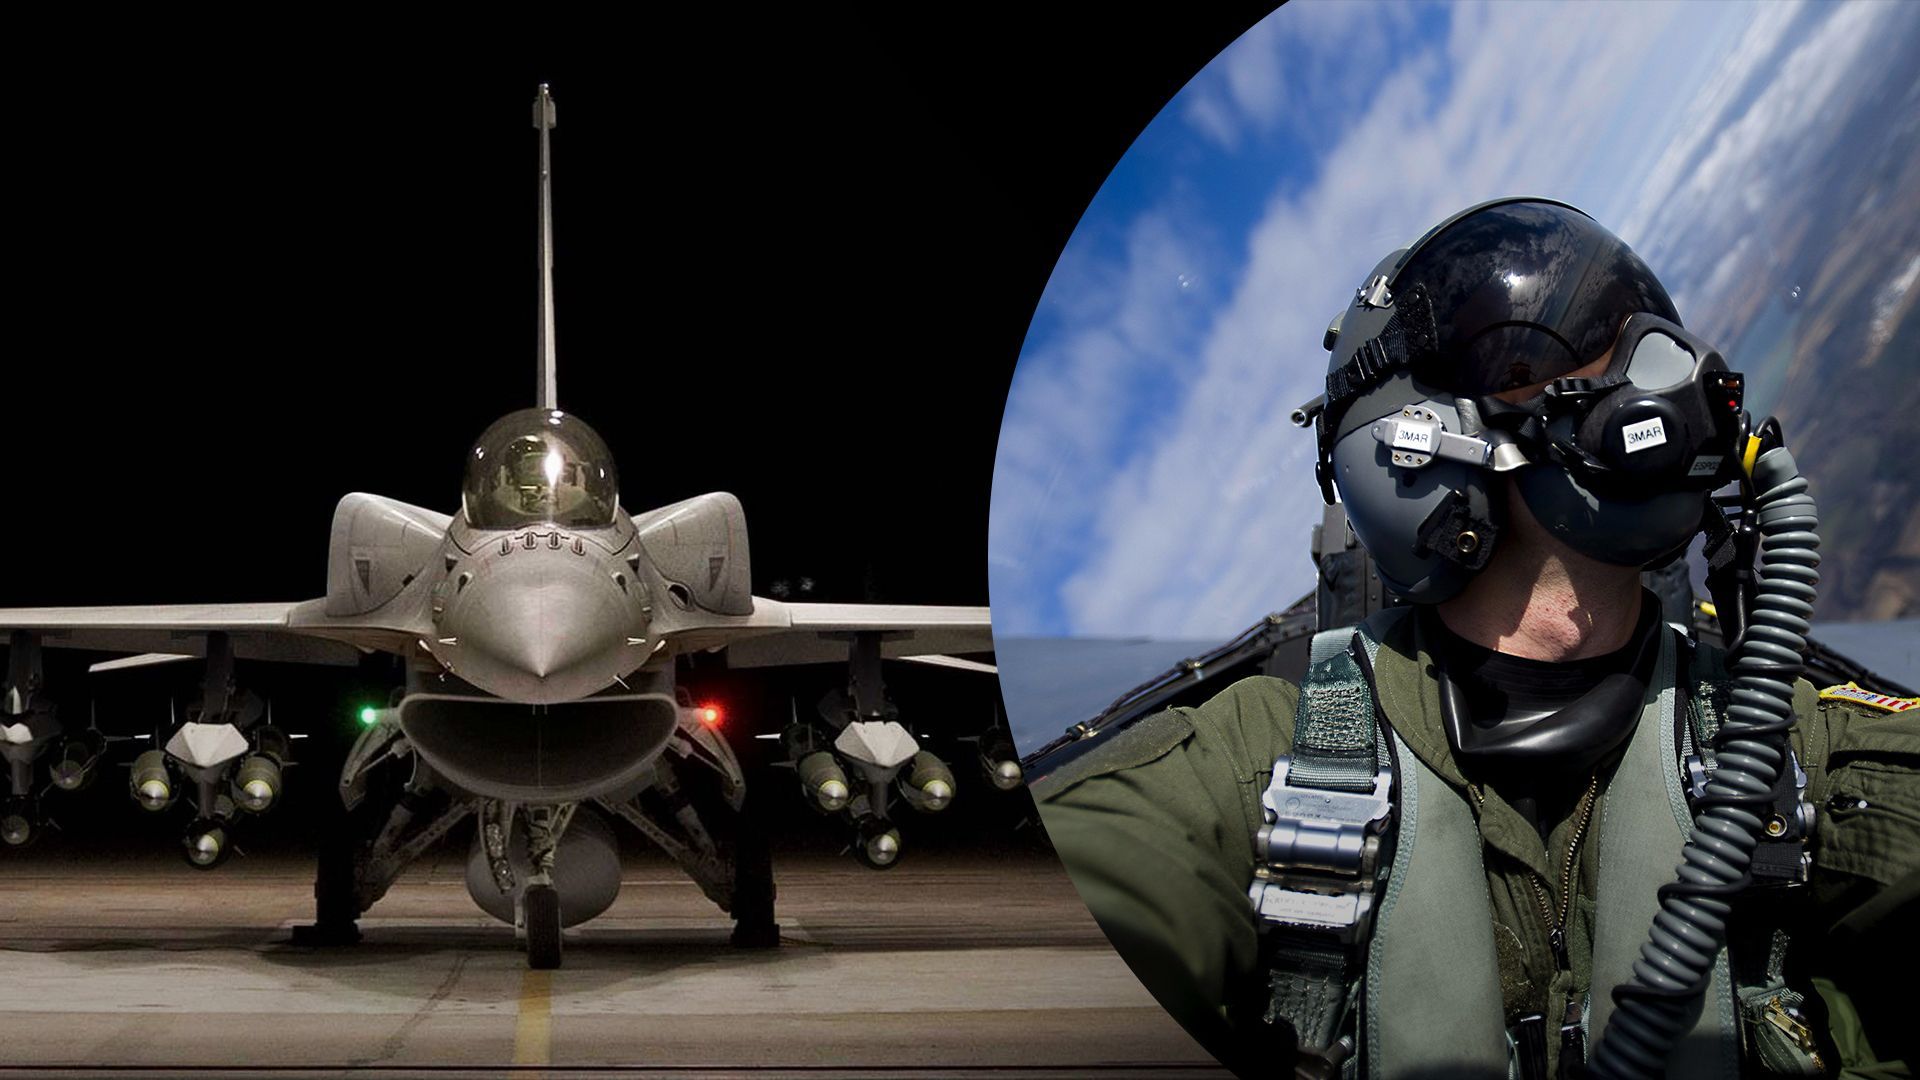 Коаліція винищувачів для України - Сунак сказав, які країни навчатимуть ЗСУ на F-16 - 24 Канал